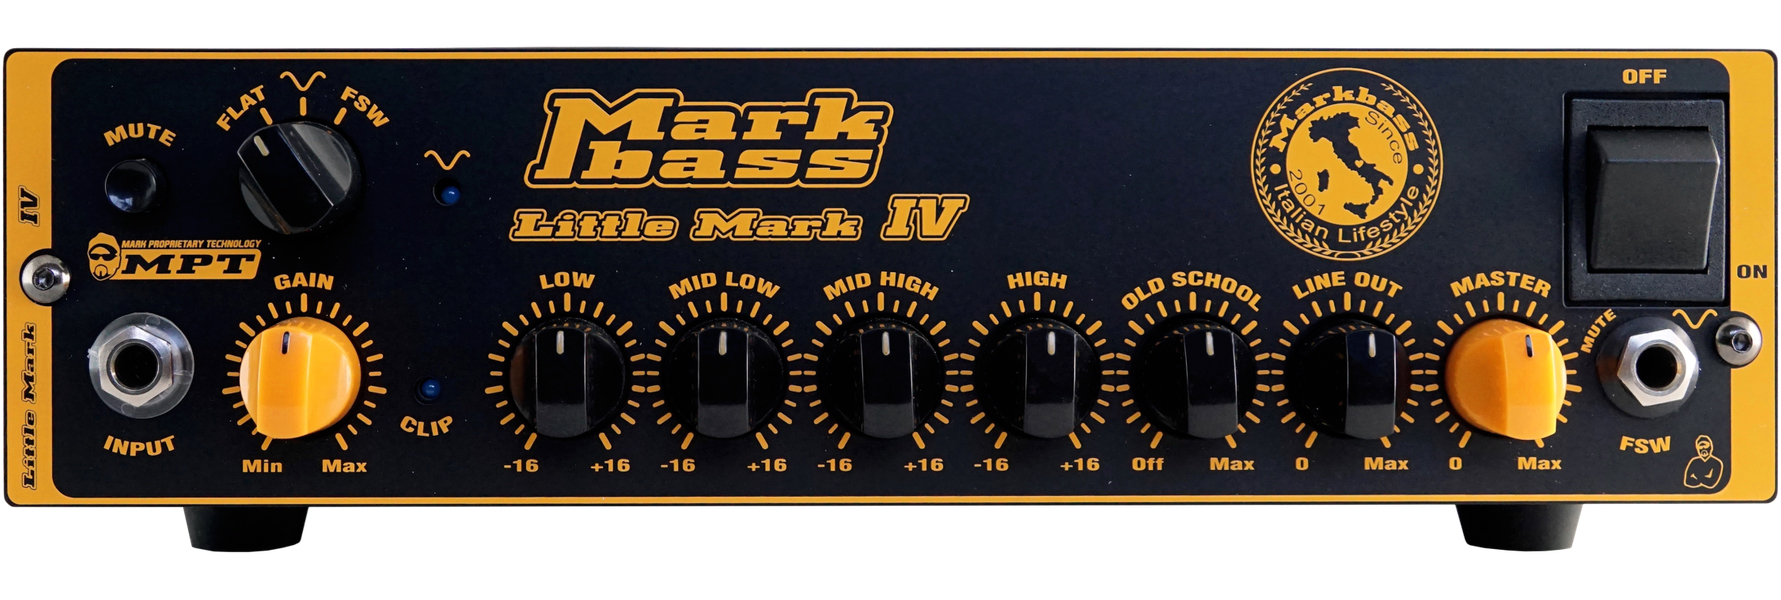 Markbass Little Mark Iv 500w Black - TÊte Ampli Basse - Variation 1